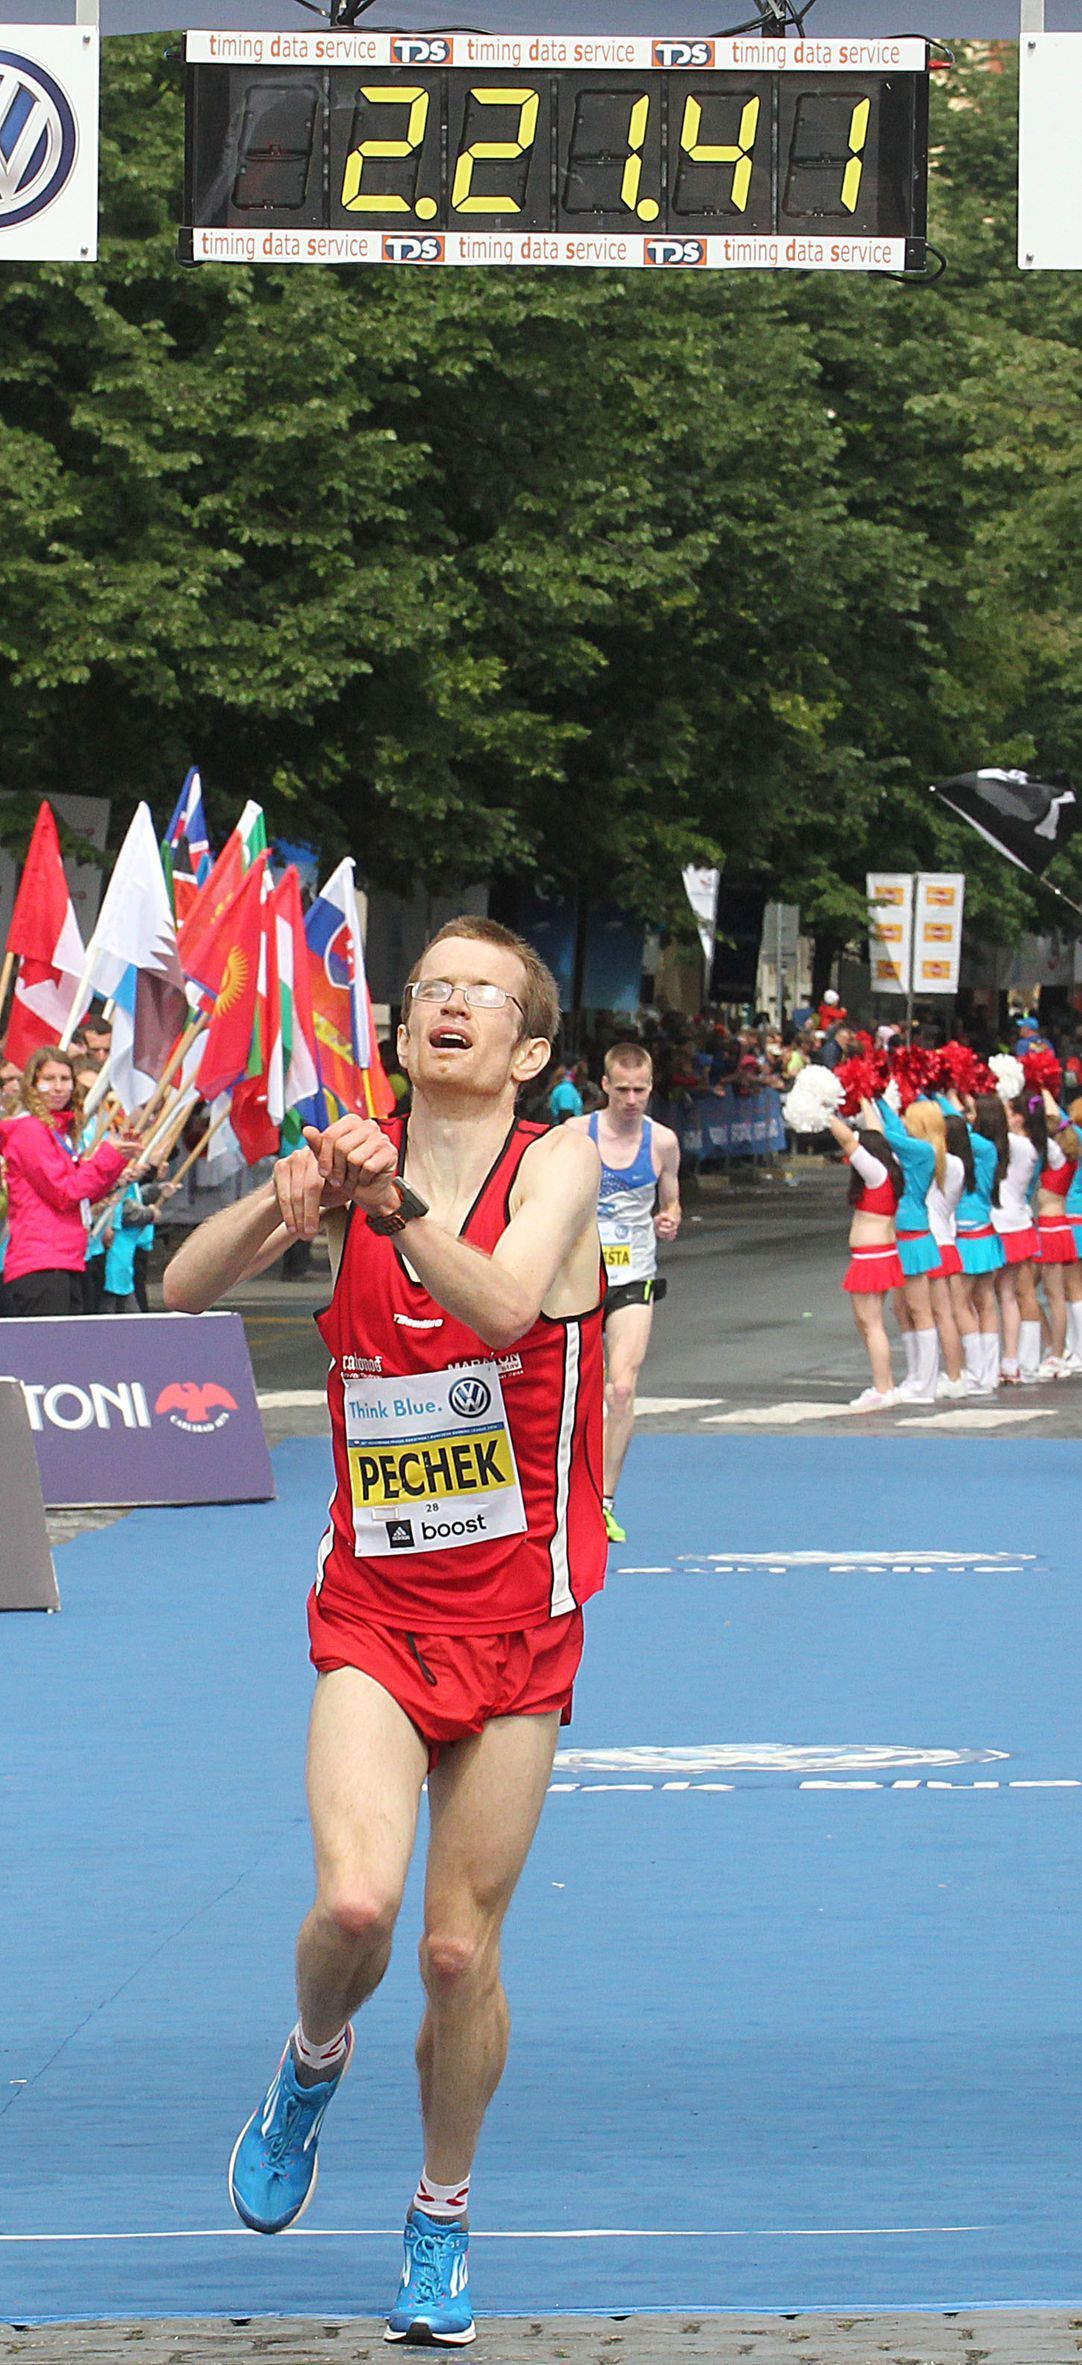 Pražský maraton 2014 (Pechek)